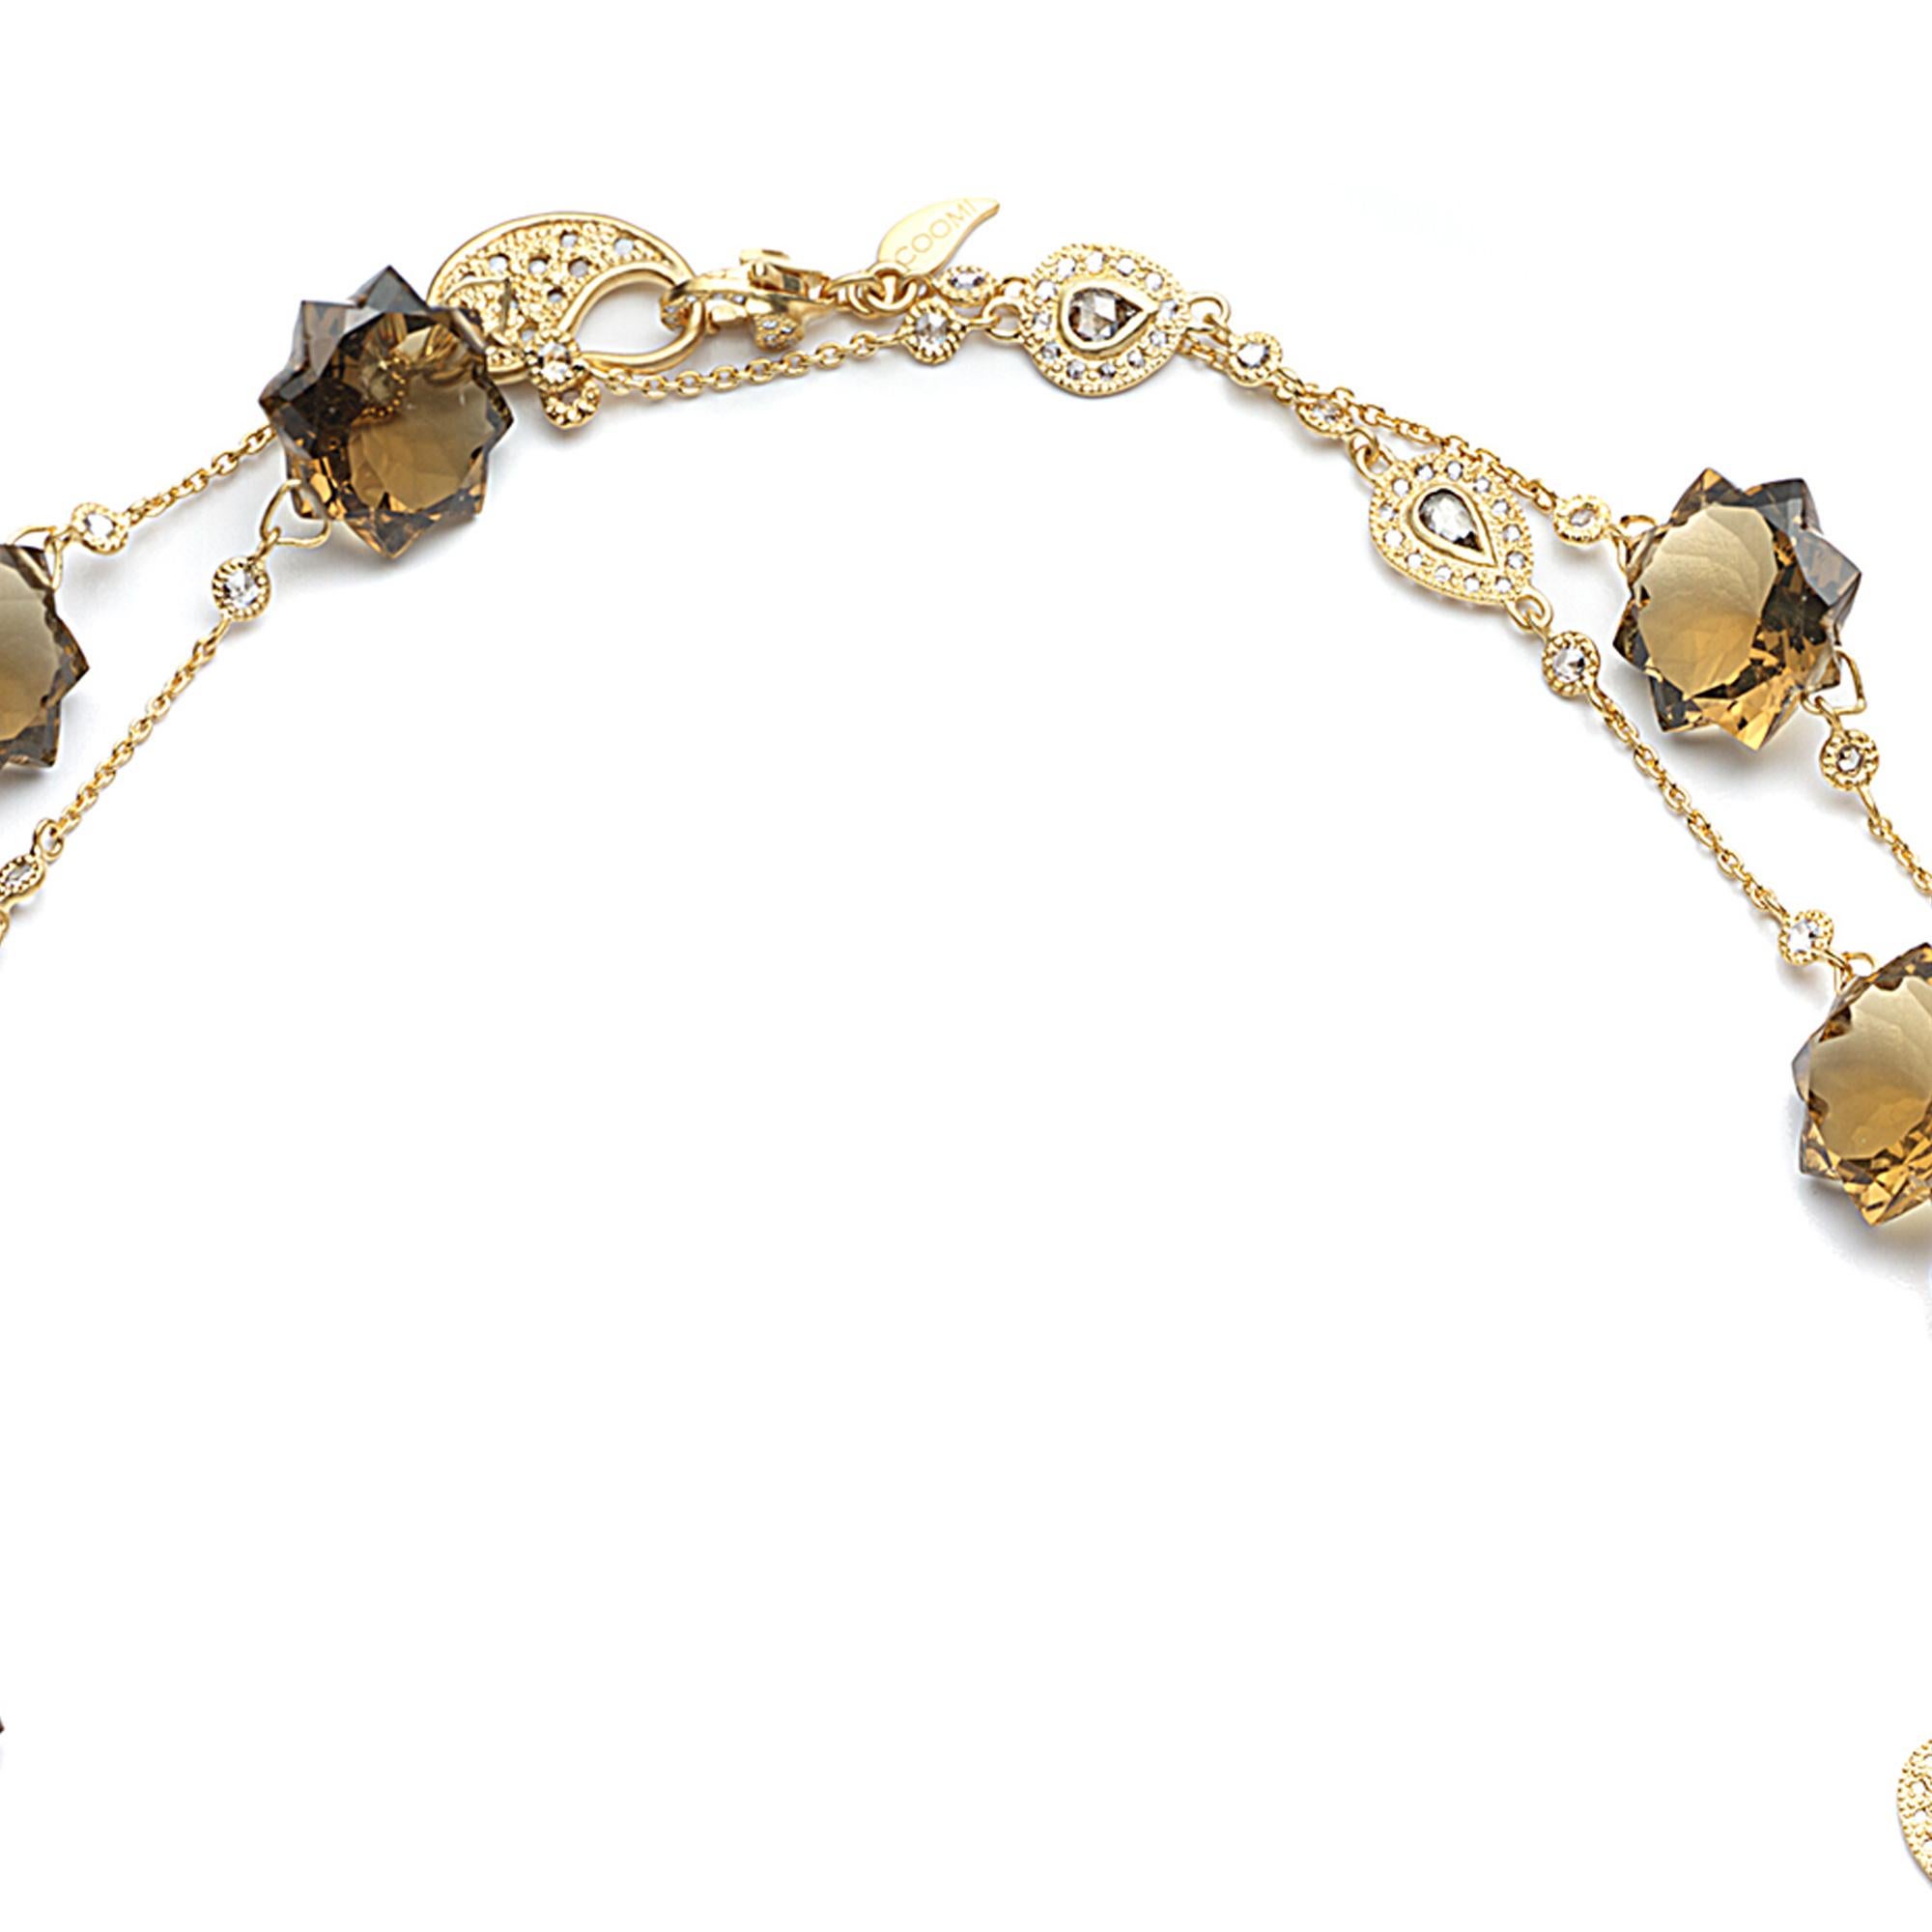 Sagrada Kaleidoskop-Halskette aus 20 Karat Gelbgold mit 88,90 Karat Cognac-Quarz und 4,87 Karat Diamanten. Diese Halskette besteht aus 11 geschliffenen Cognacquarzen im Starburst-Stil und ist Teil der Sagrada Kaleidoscope Collection von COOMI. 